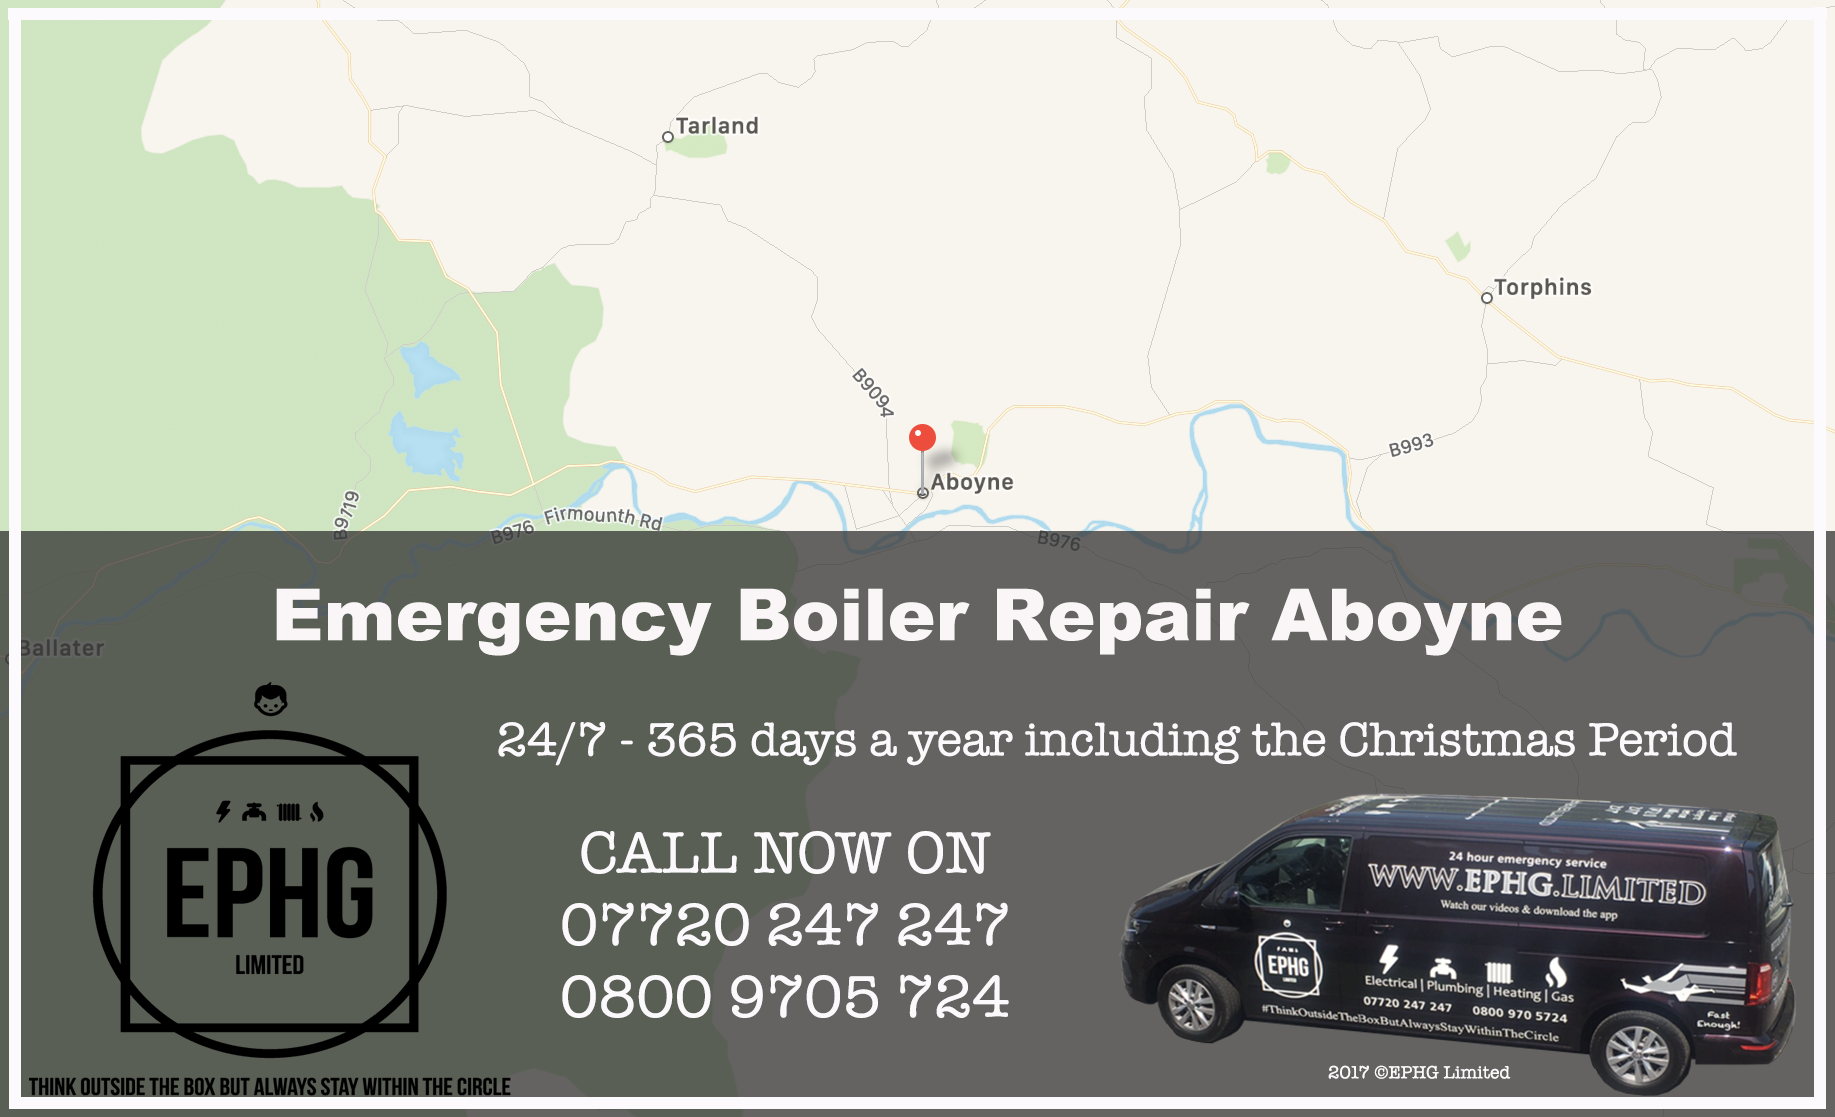 24 Hour Emergency Boiler Repair Aboyne